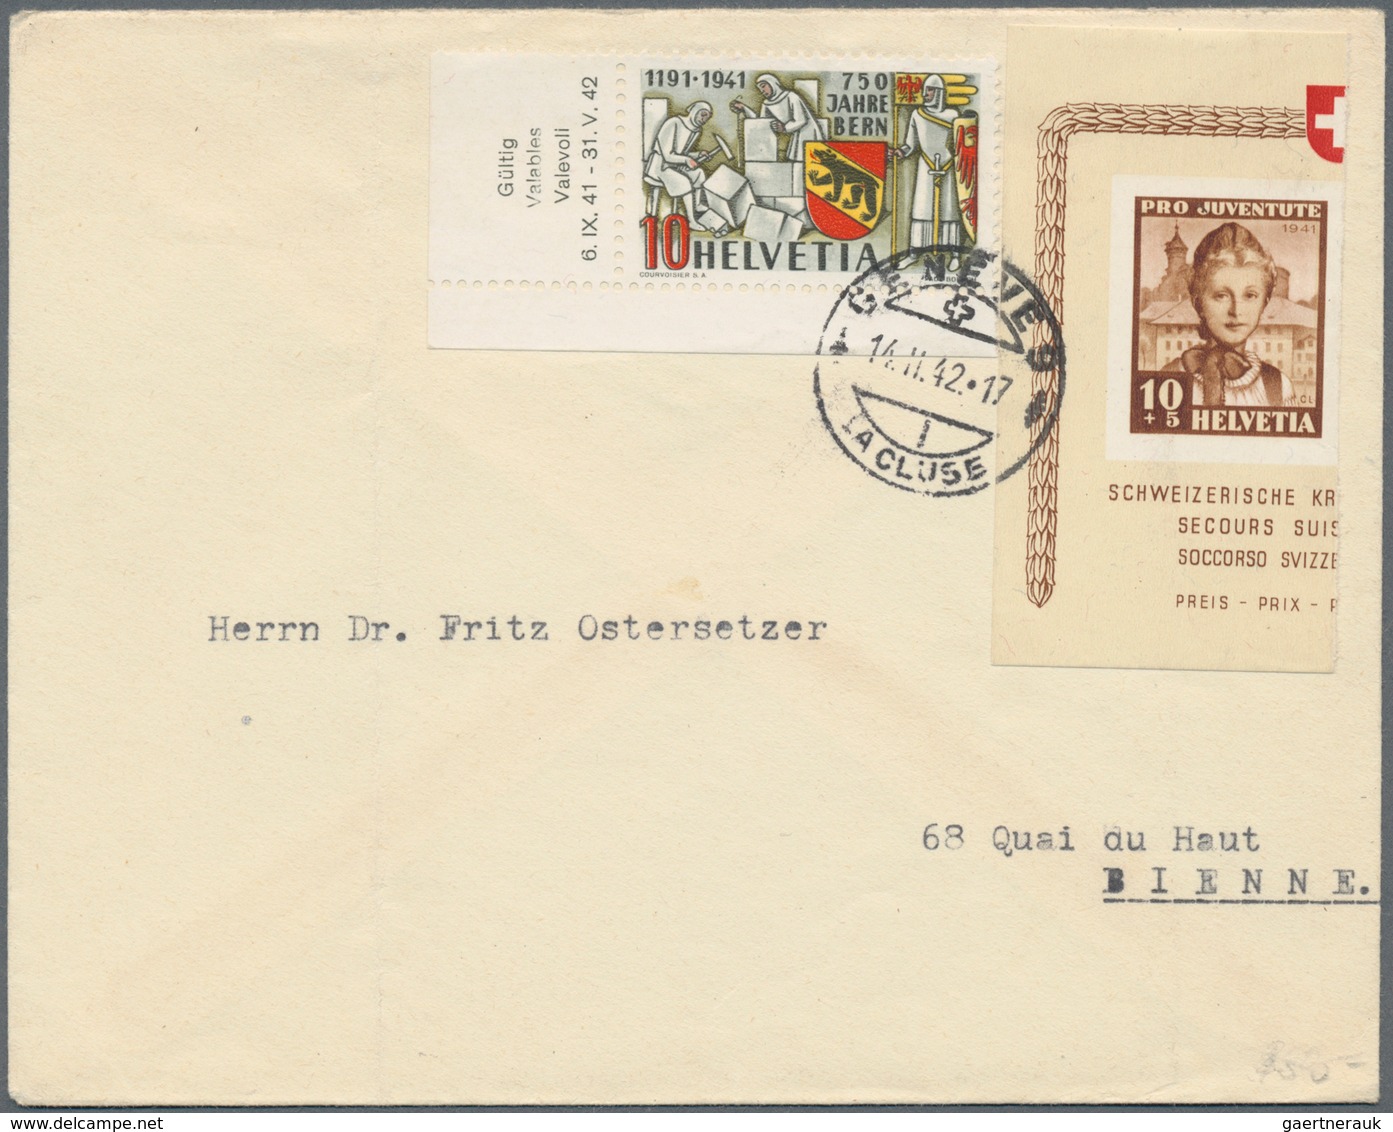 Schweiz: 1840er-1940er: Rund 230 Briefe, Postkarten, Ganzsachen und Ansichtskarten der Schweiz, dabe